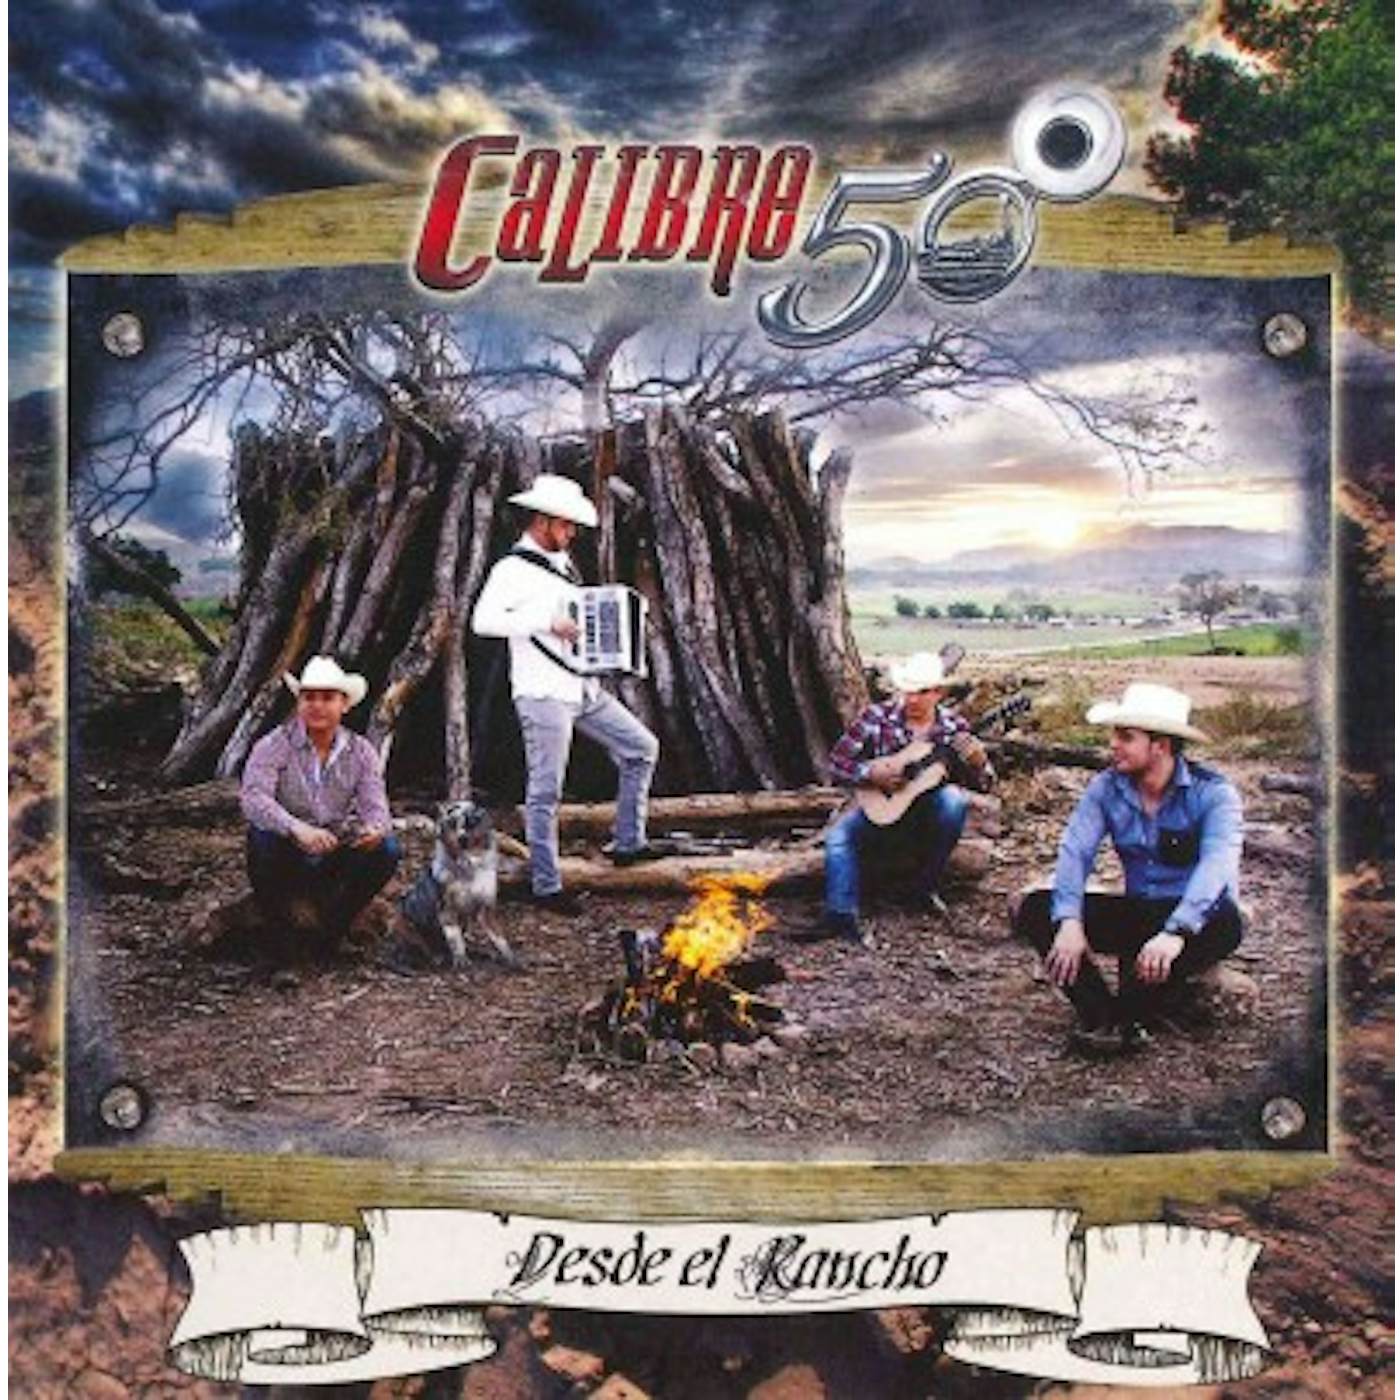 Calibre 50 DESDE EL RANCHO CD